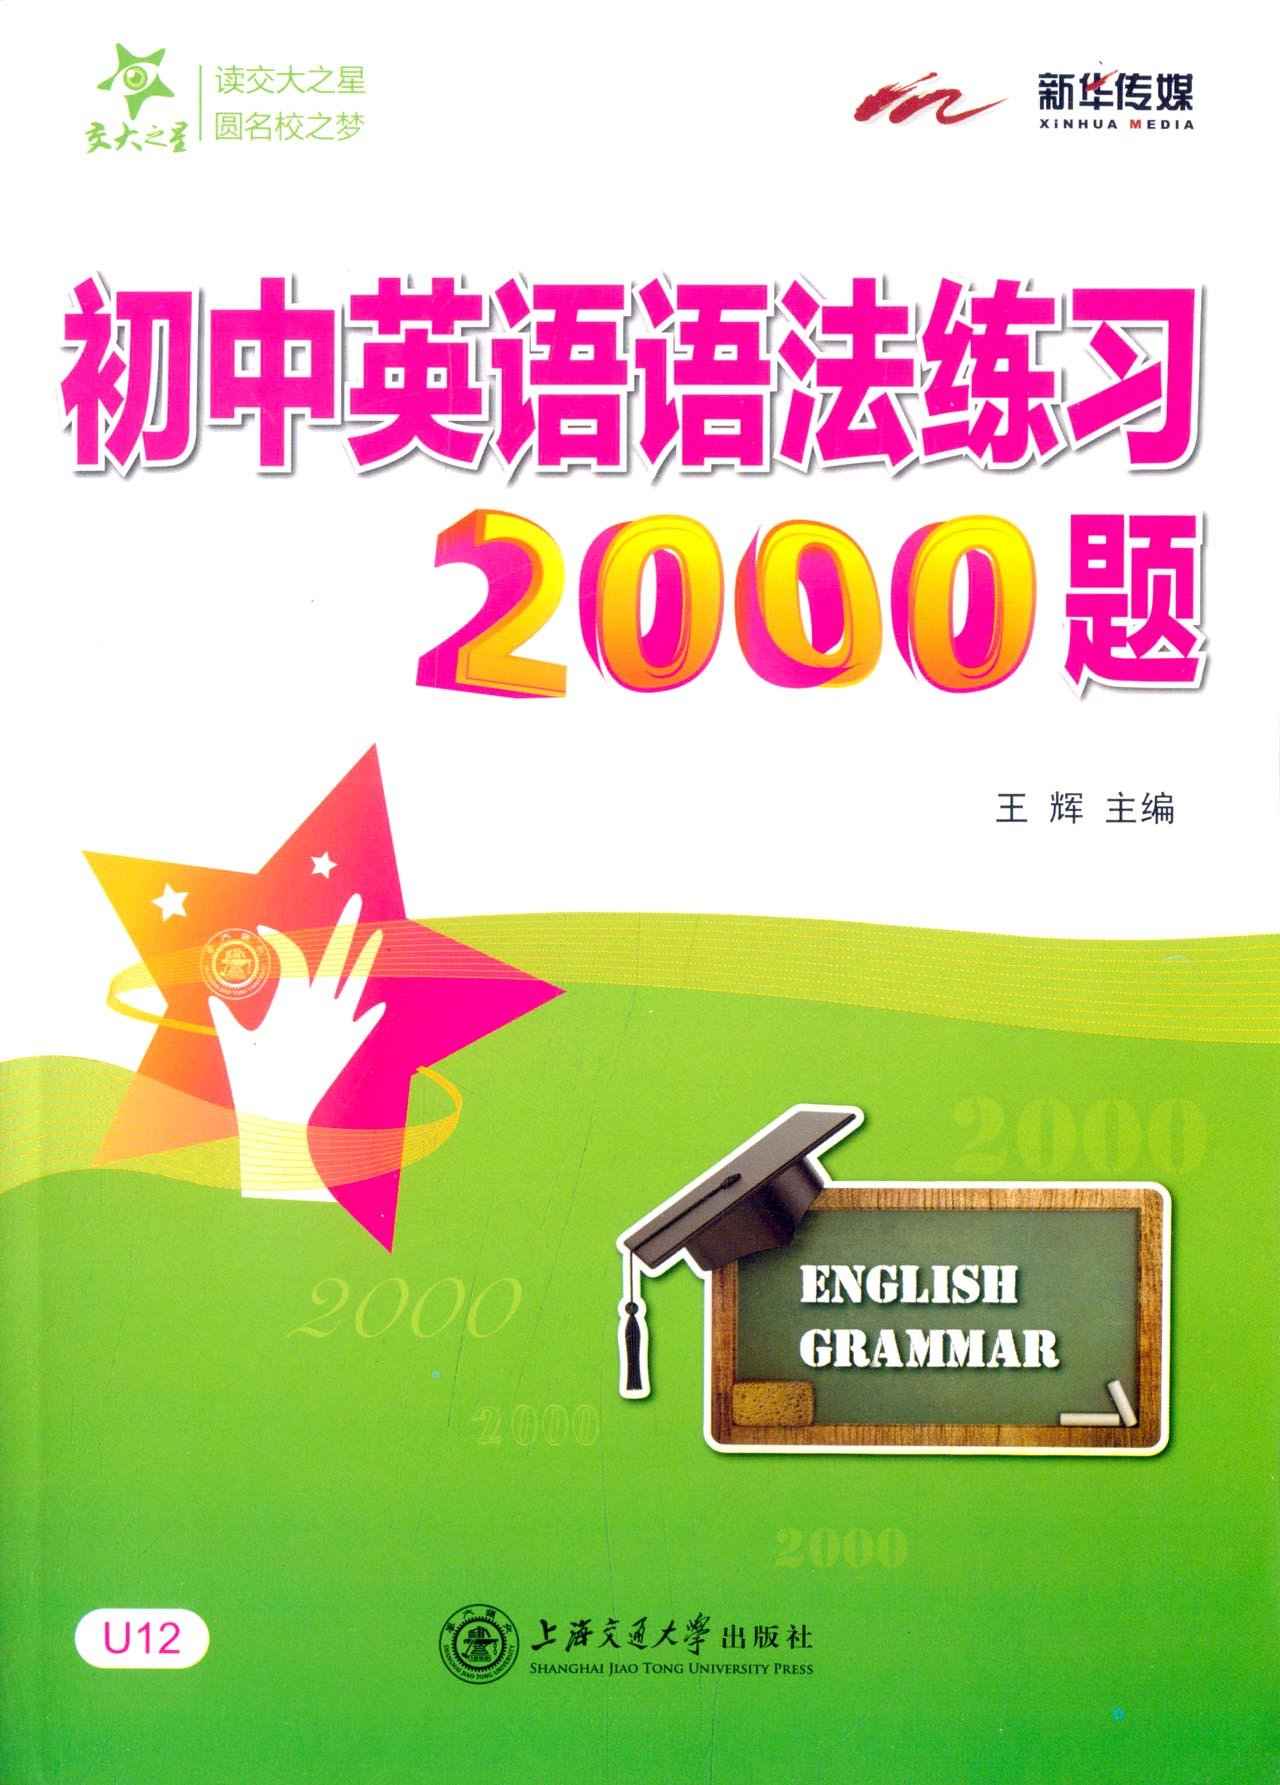 交大之星:初中英语语法练习2000题